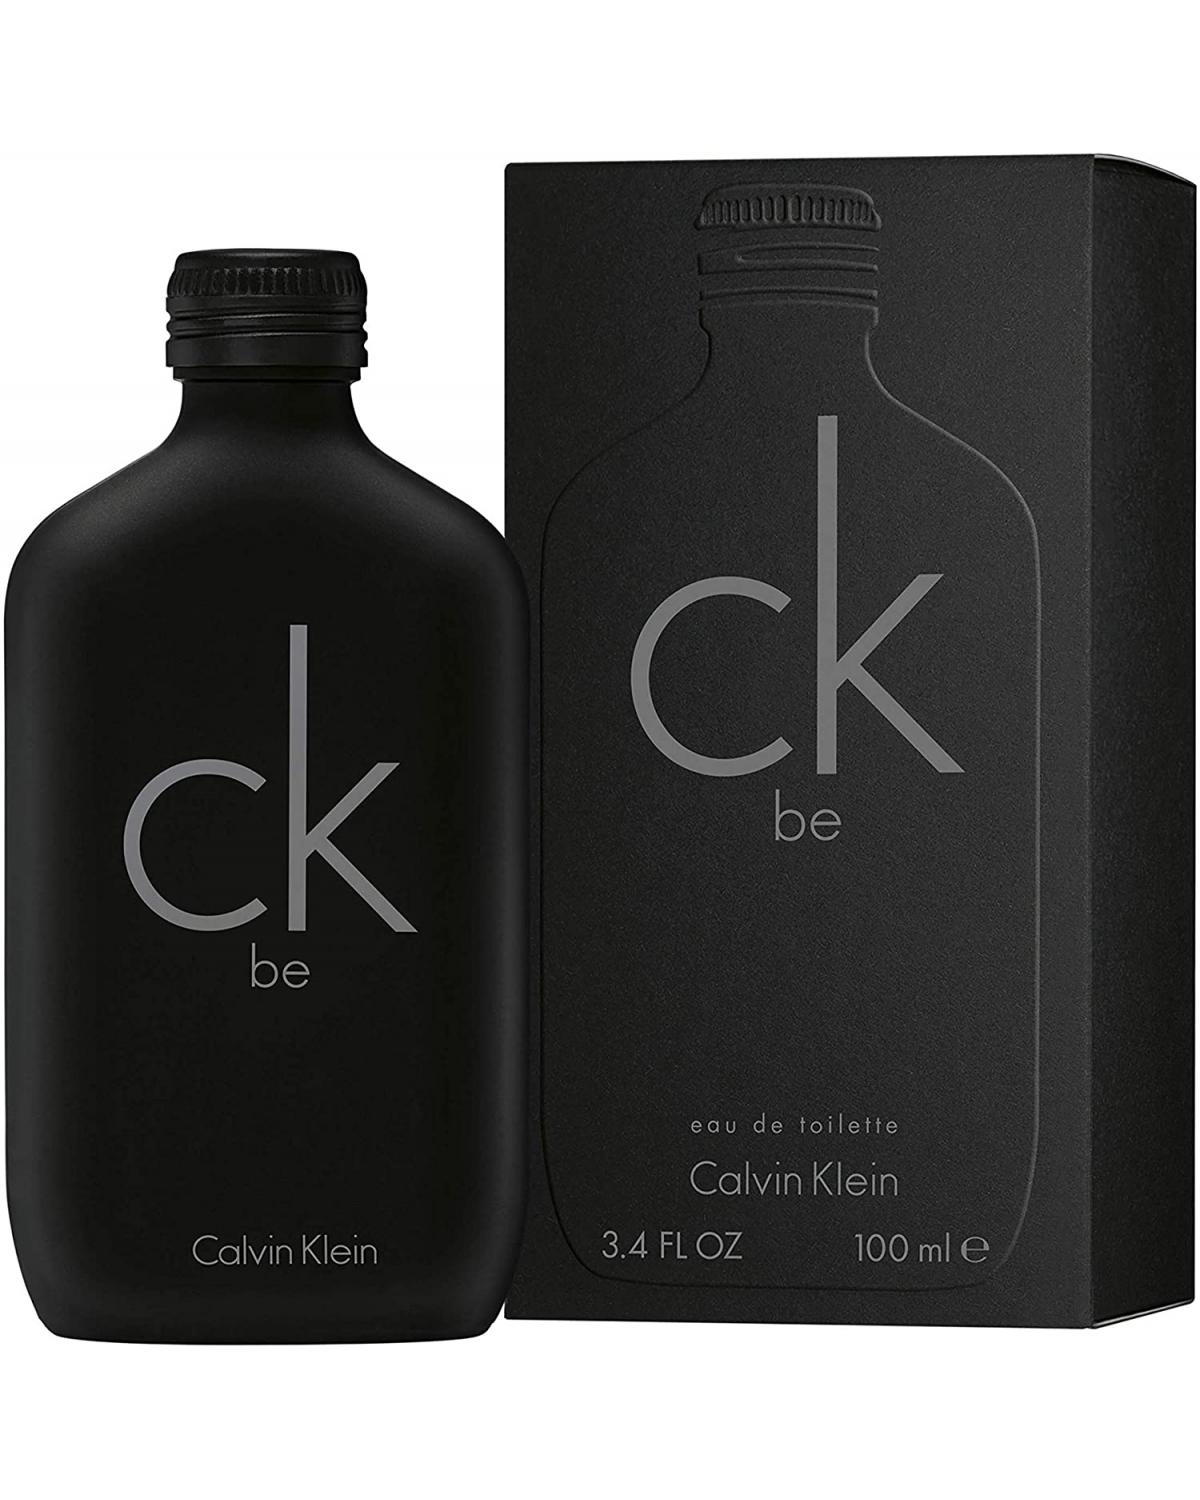 Ck Be Calvin Klein - Perfume Unissex - Eau de Toilette - 100ml